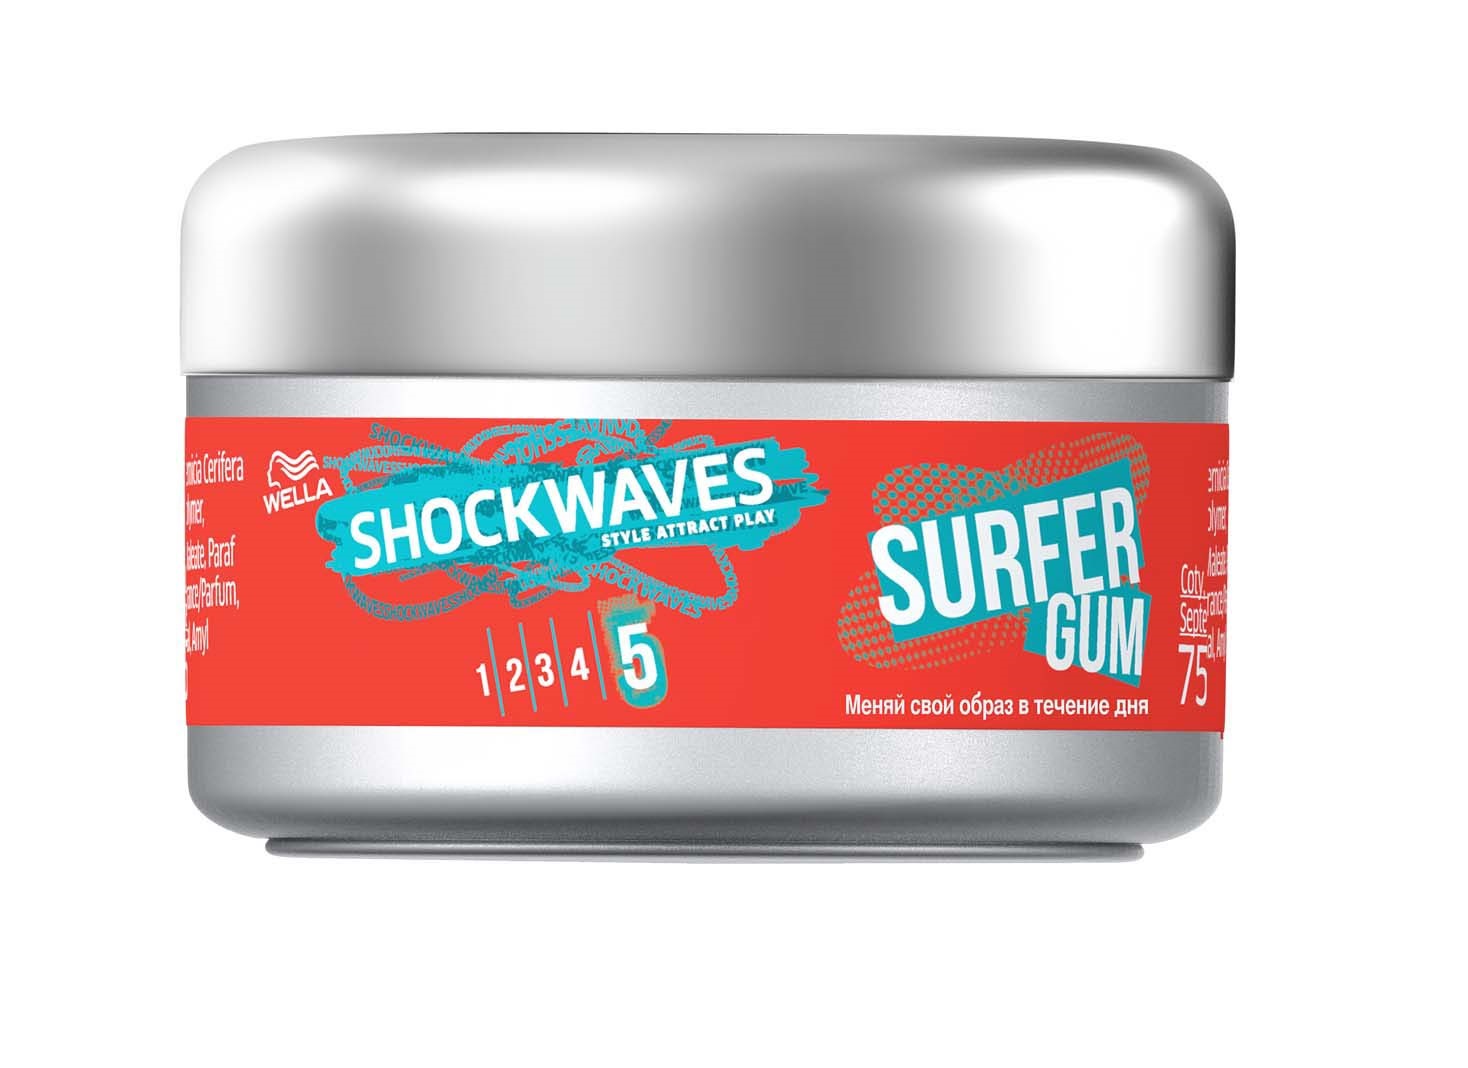 Воск Shockwaves для создания текстурной укладки волос, 75 мл - фото 1